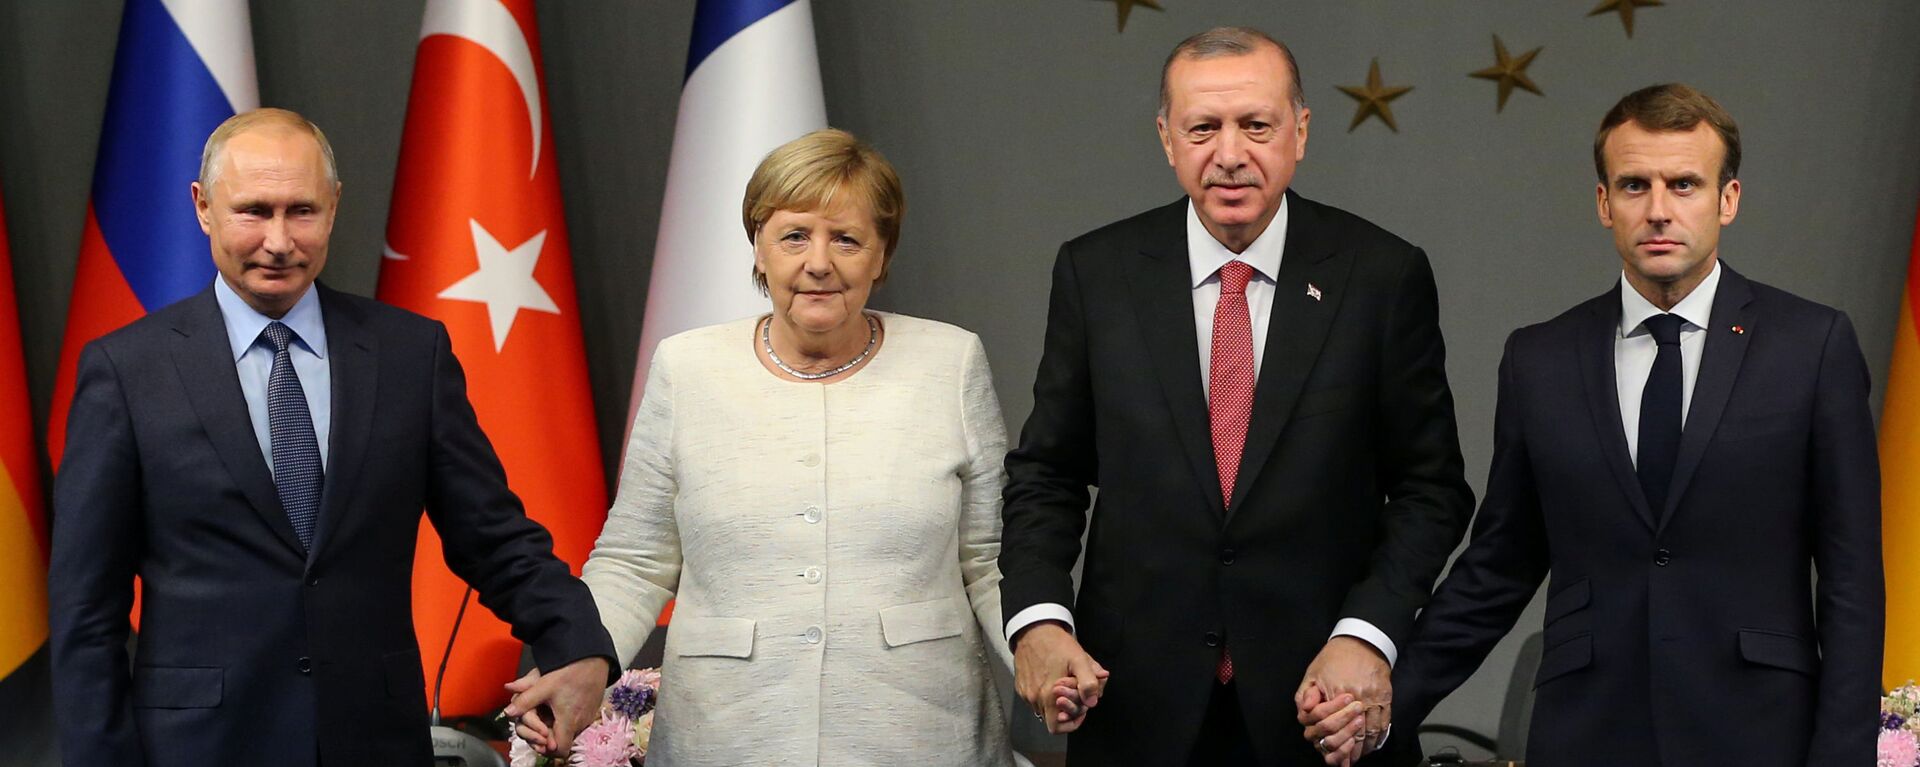 Sestdien Stambulā notika Turcijas, Krievijas, Vācijas un Francijas līderu tikšanās - Sputnik Latvija, 1920, 29.10.2018